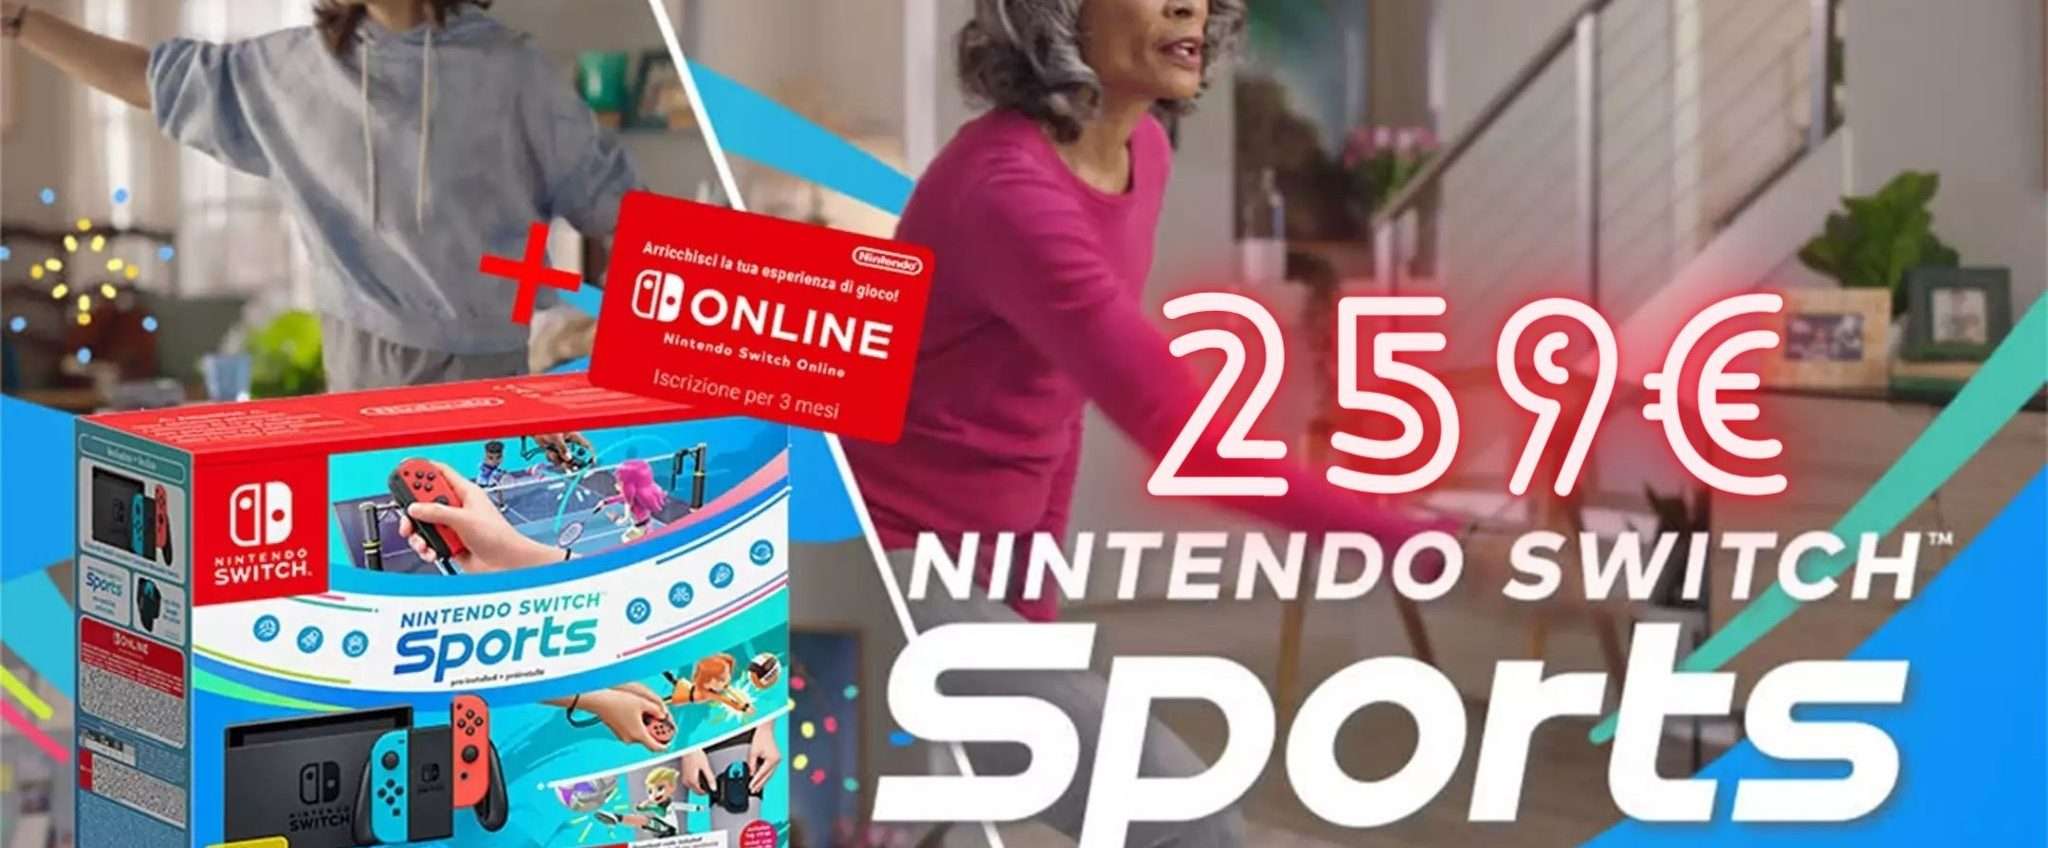 Nintendo Switch + Switch Sports: la DOPPIA PROMOZIONE di eBay è PAZZESCA!